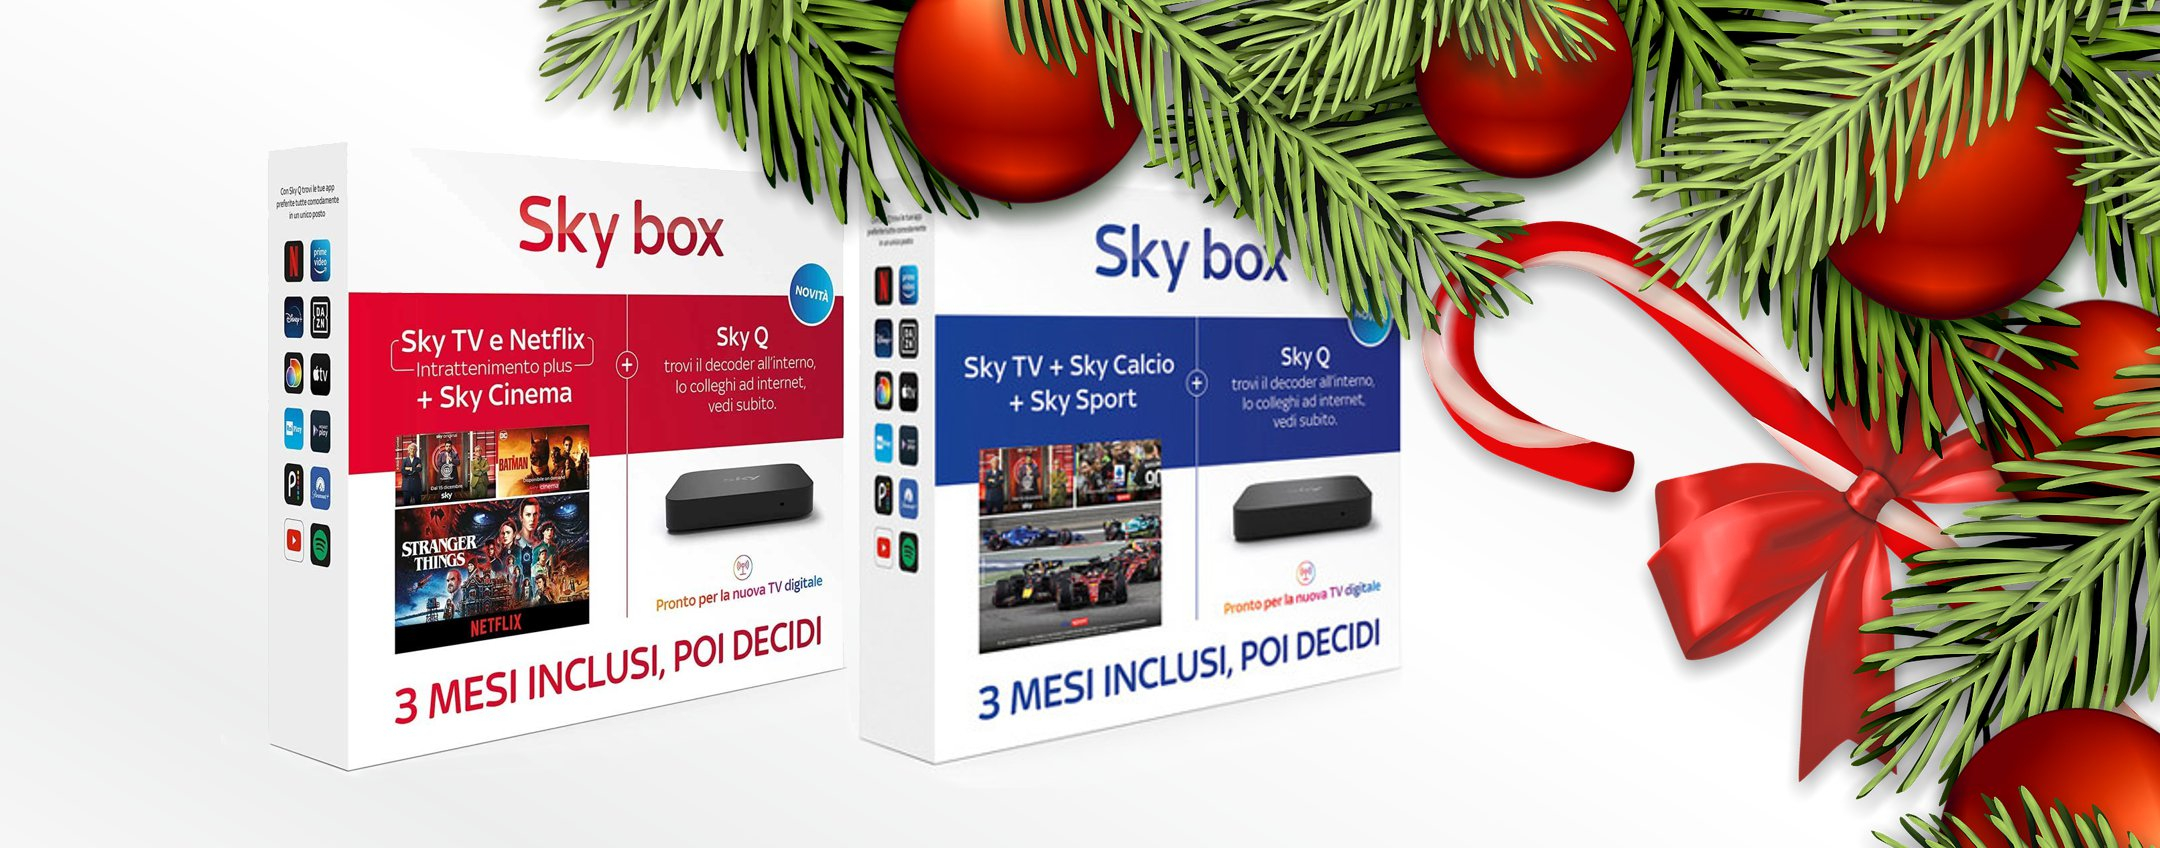 Natale 2022, idea regalo intrisa di grandi passioni: ecco Sky box